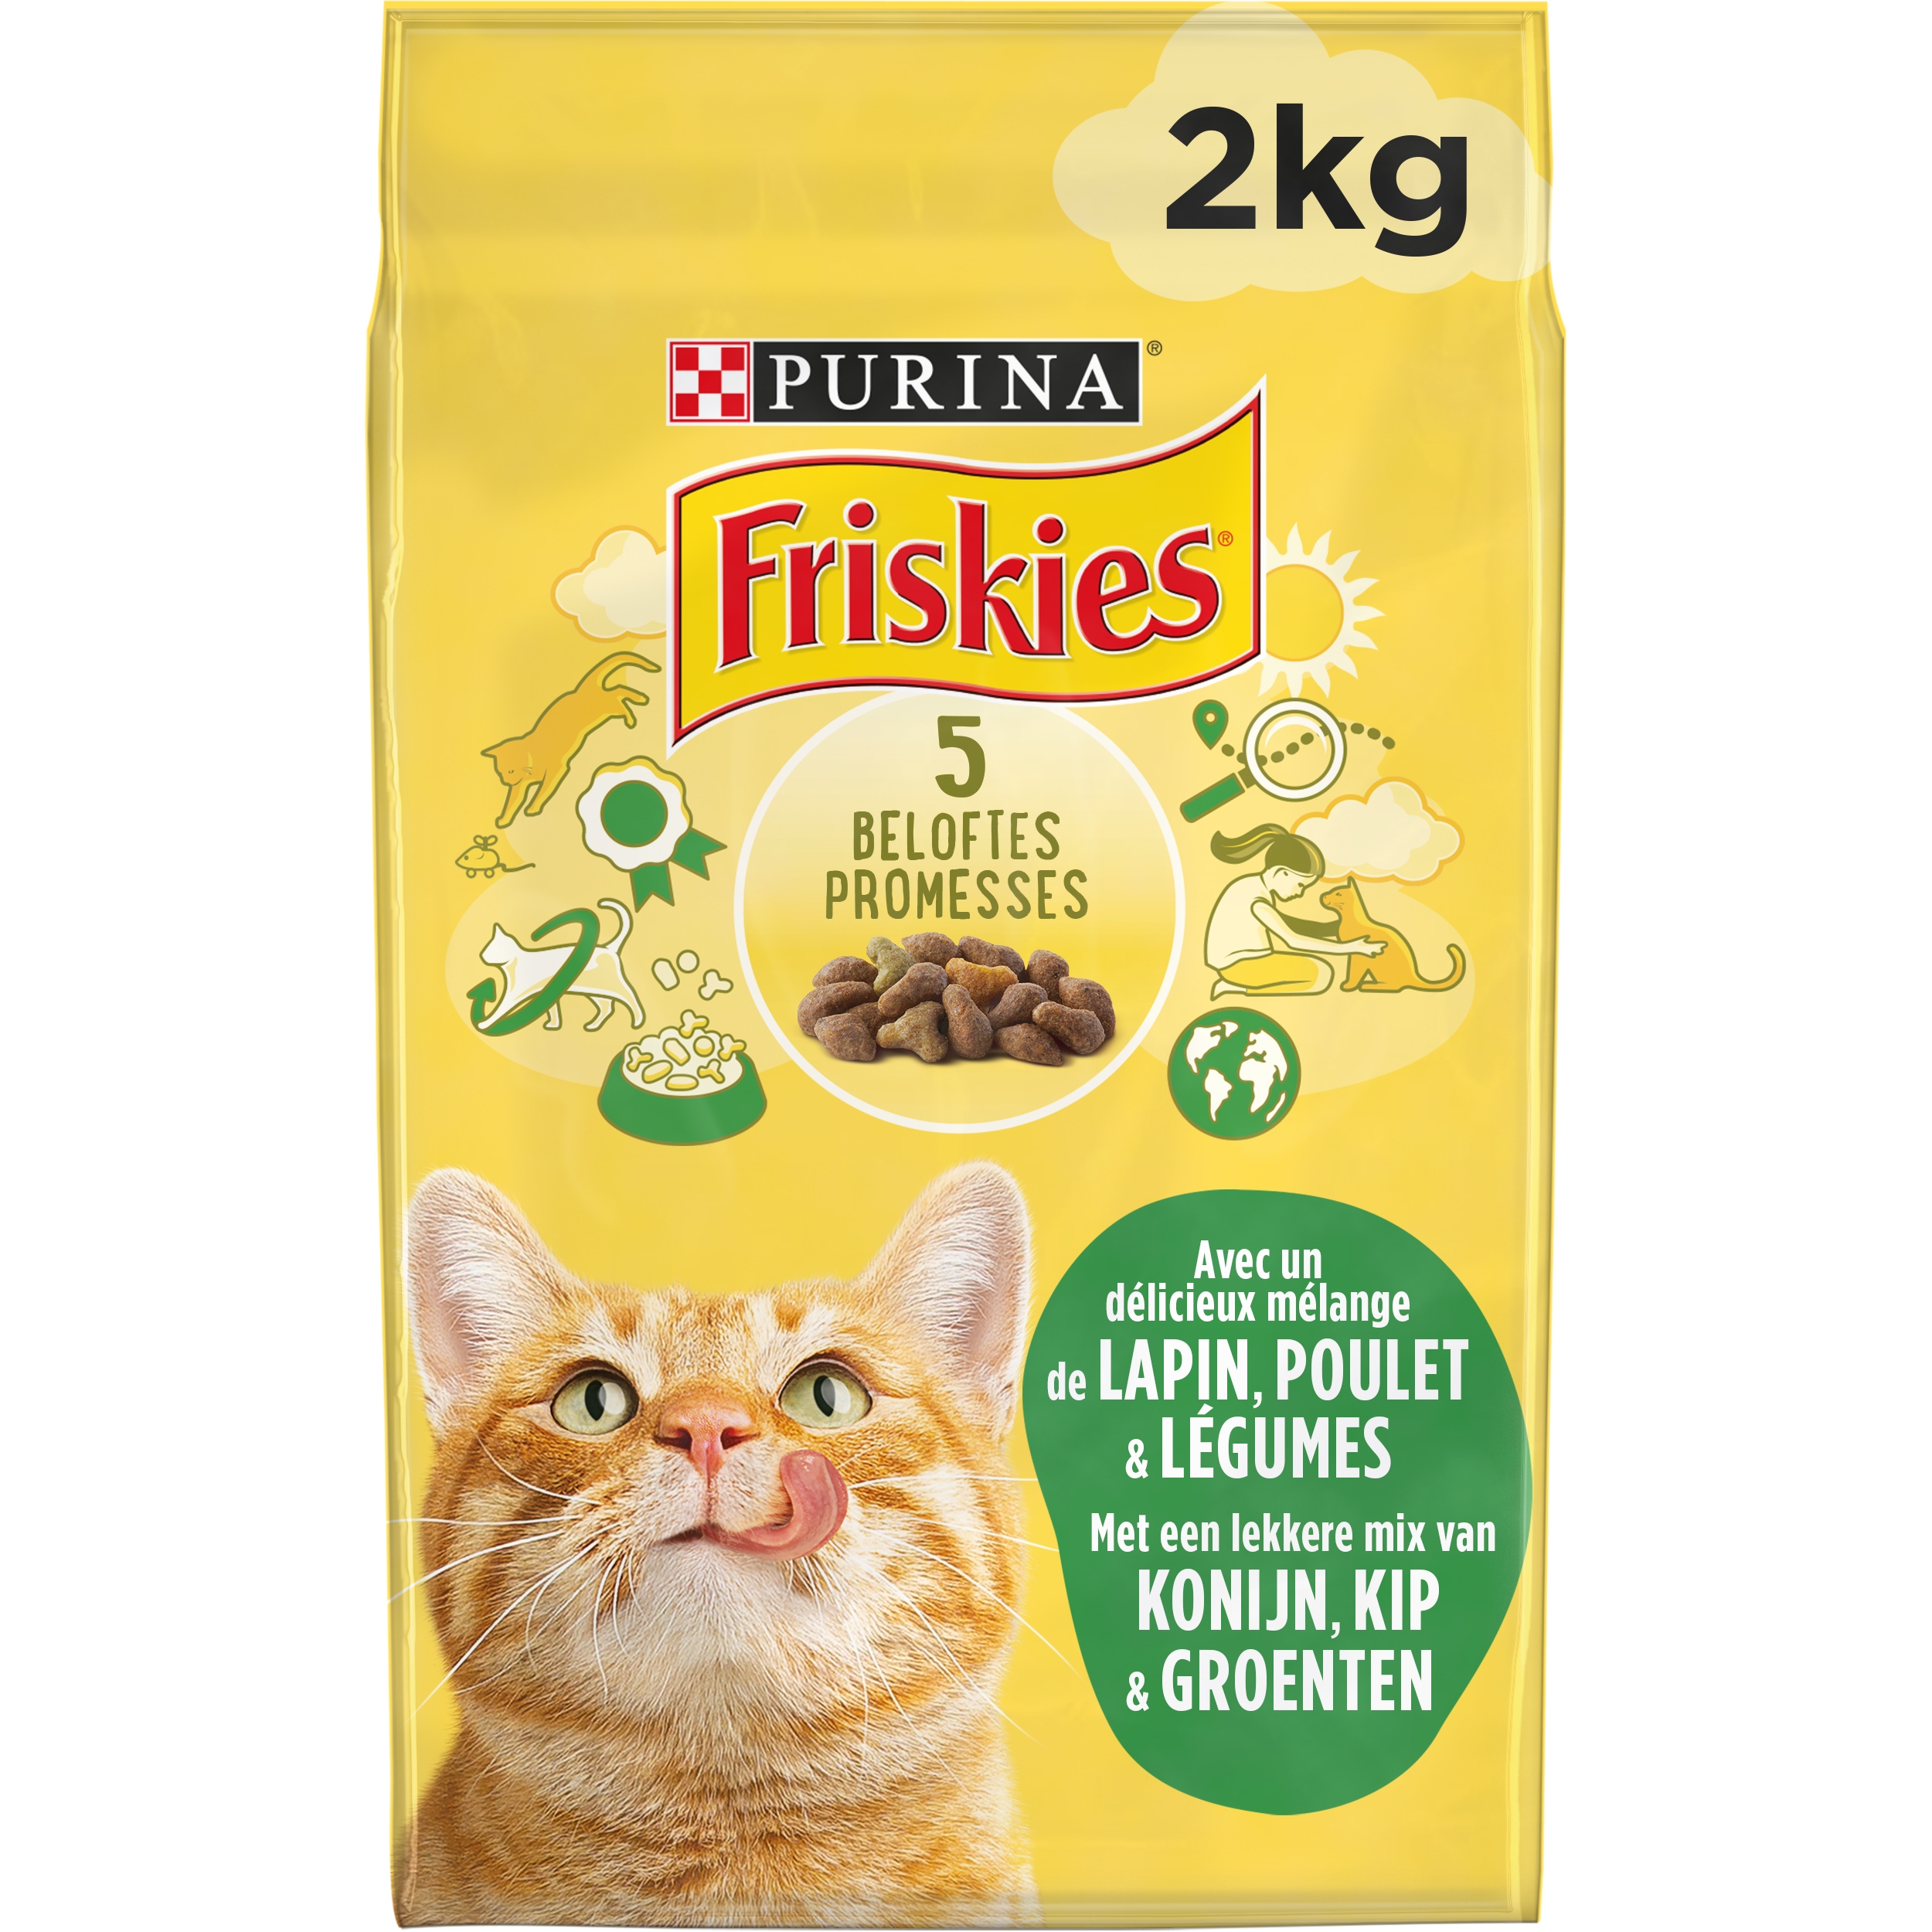 Friskies 7 Coups de Cœur nourriture pour chats adultes, 1,42